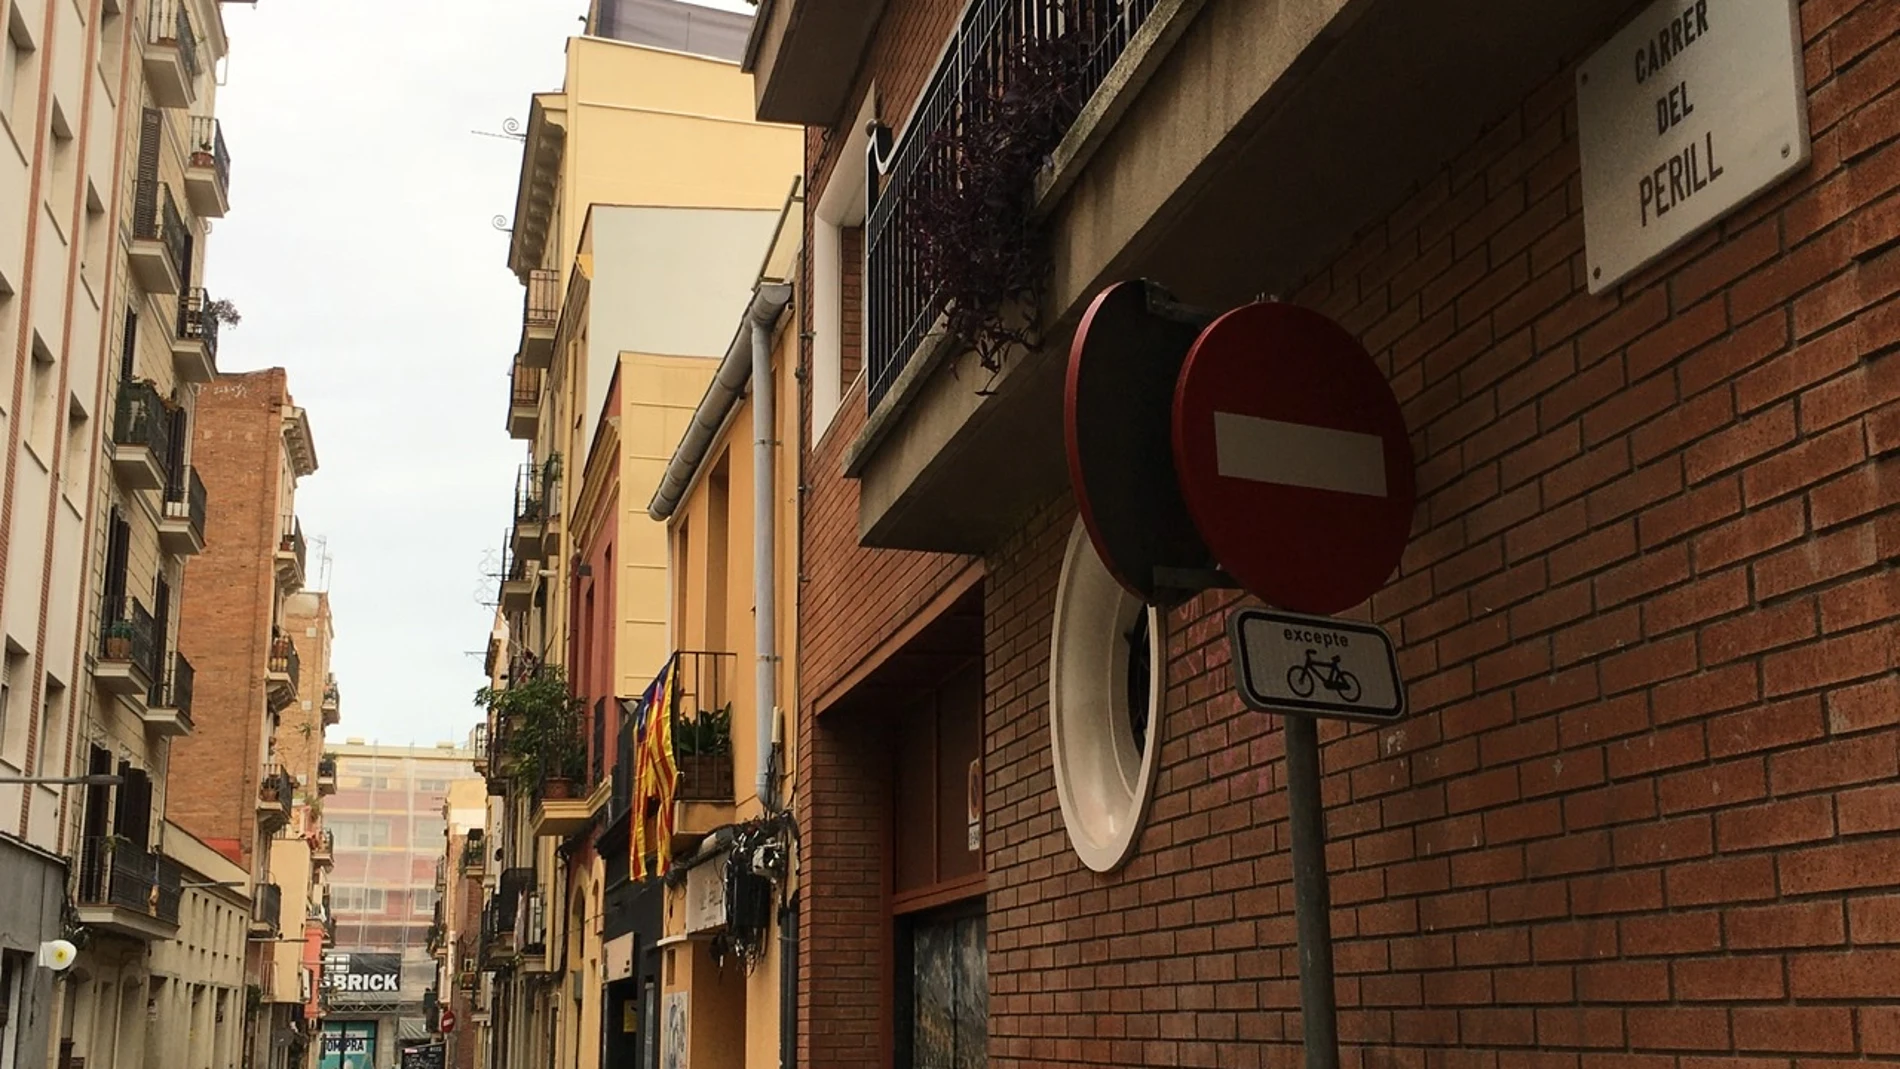 La céntrica calle del Perill en el distrito de Gràcia